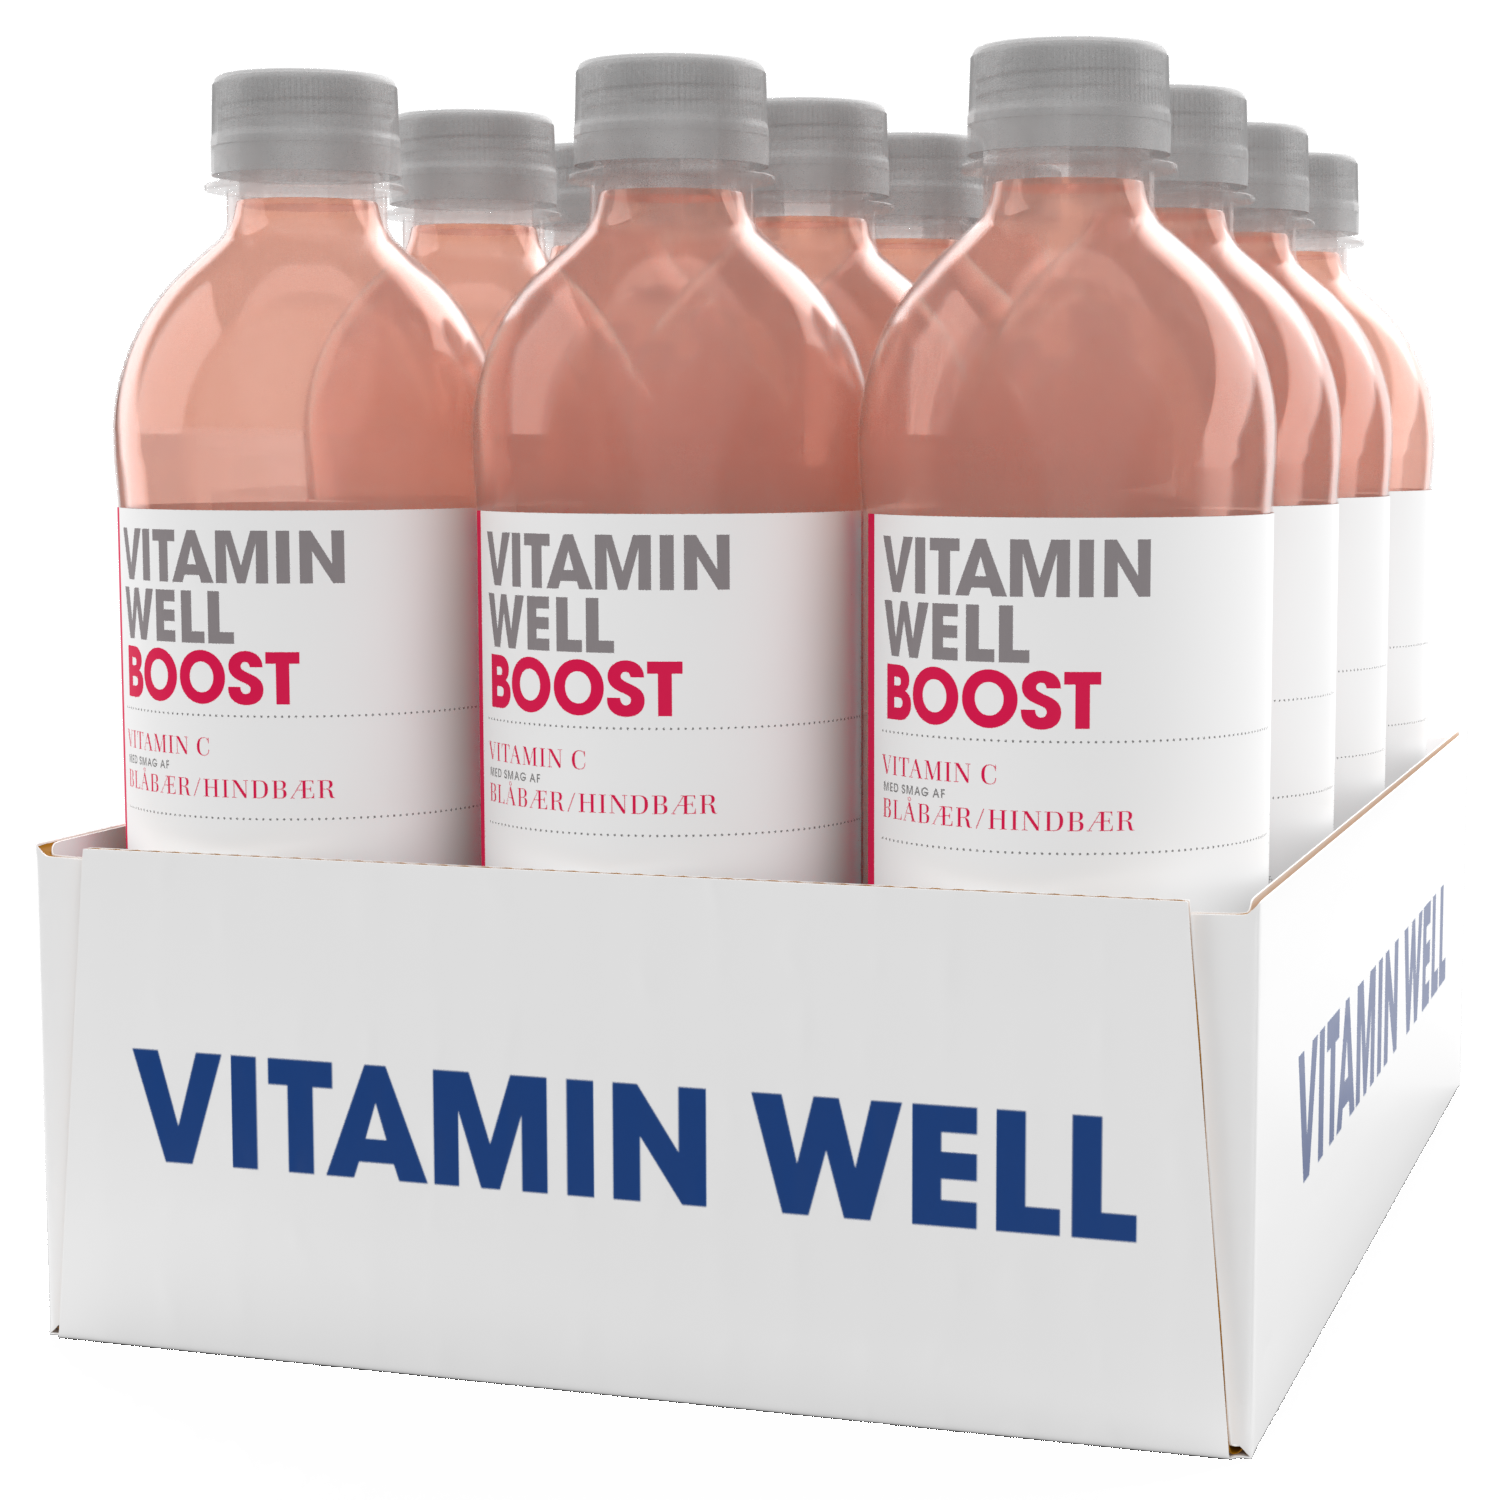 Brug Vitamin Well Boost (12x 500ml) til en forbedret oplevelse